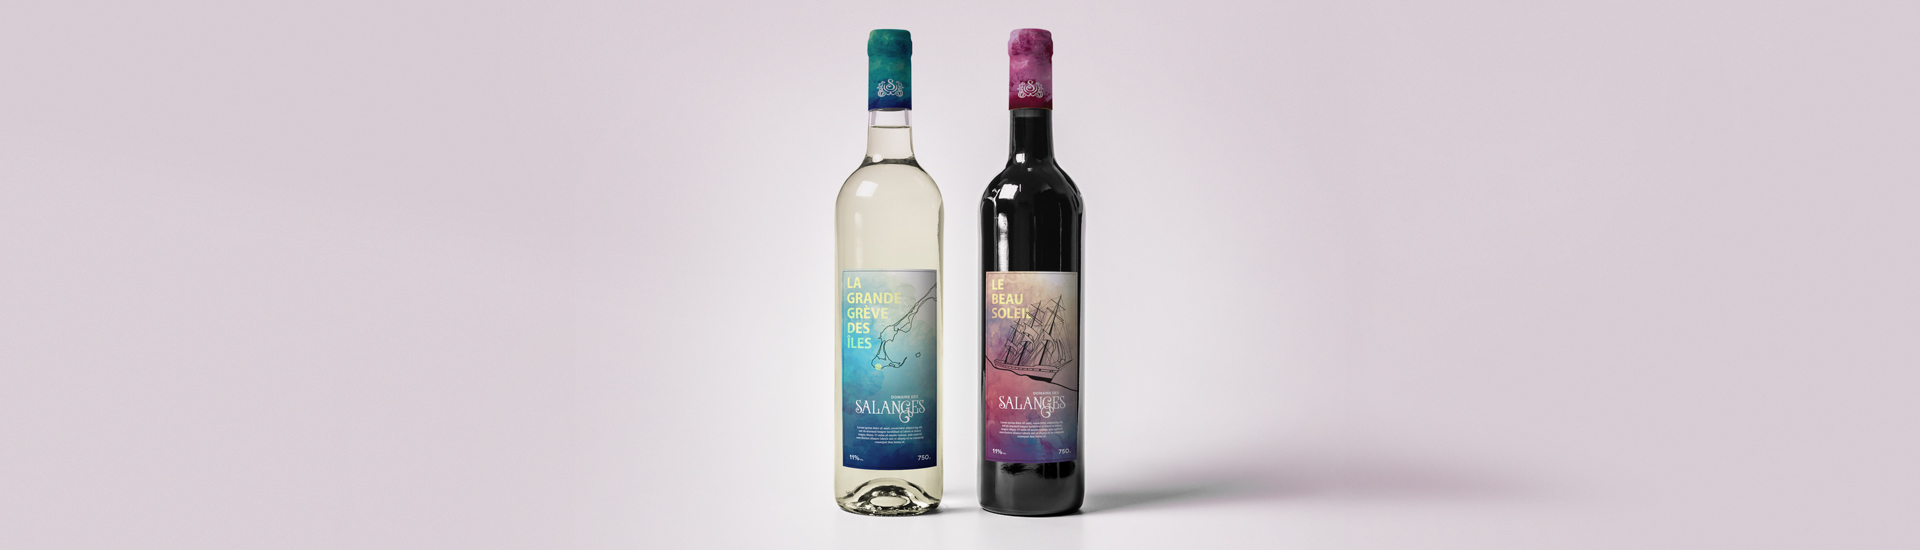 Habillage de bouteilles Vignoble des Salanges